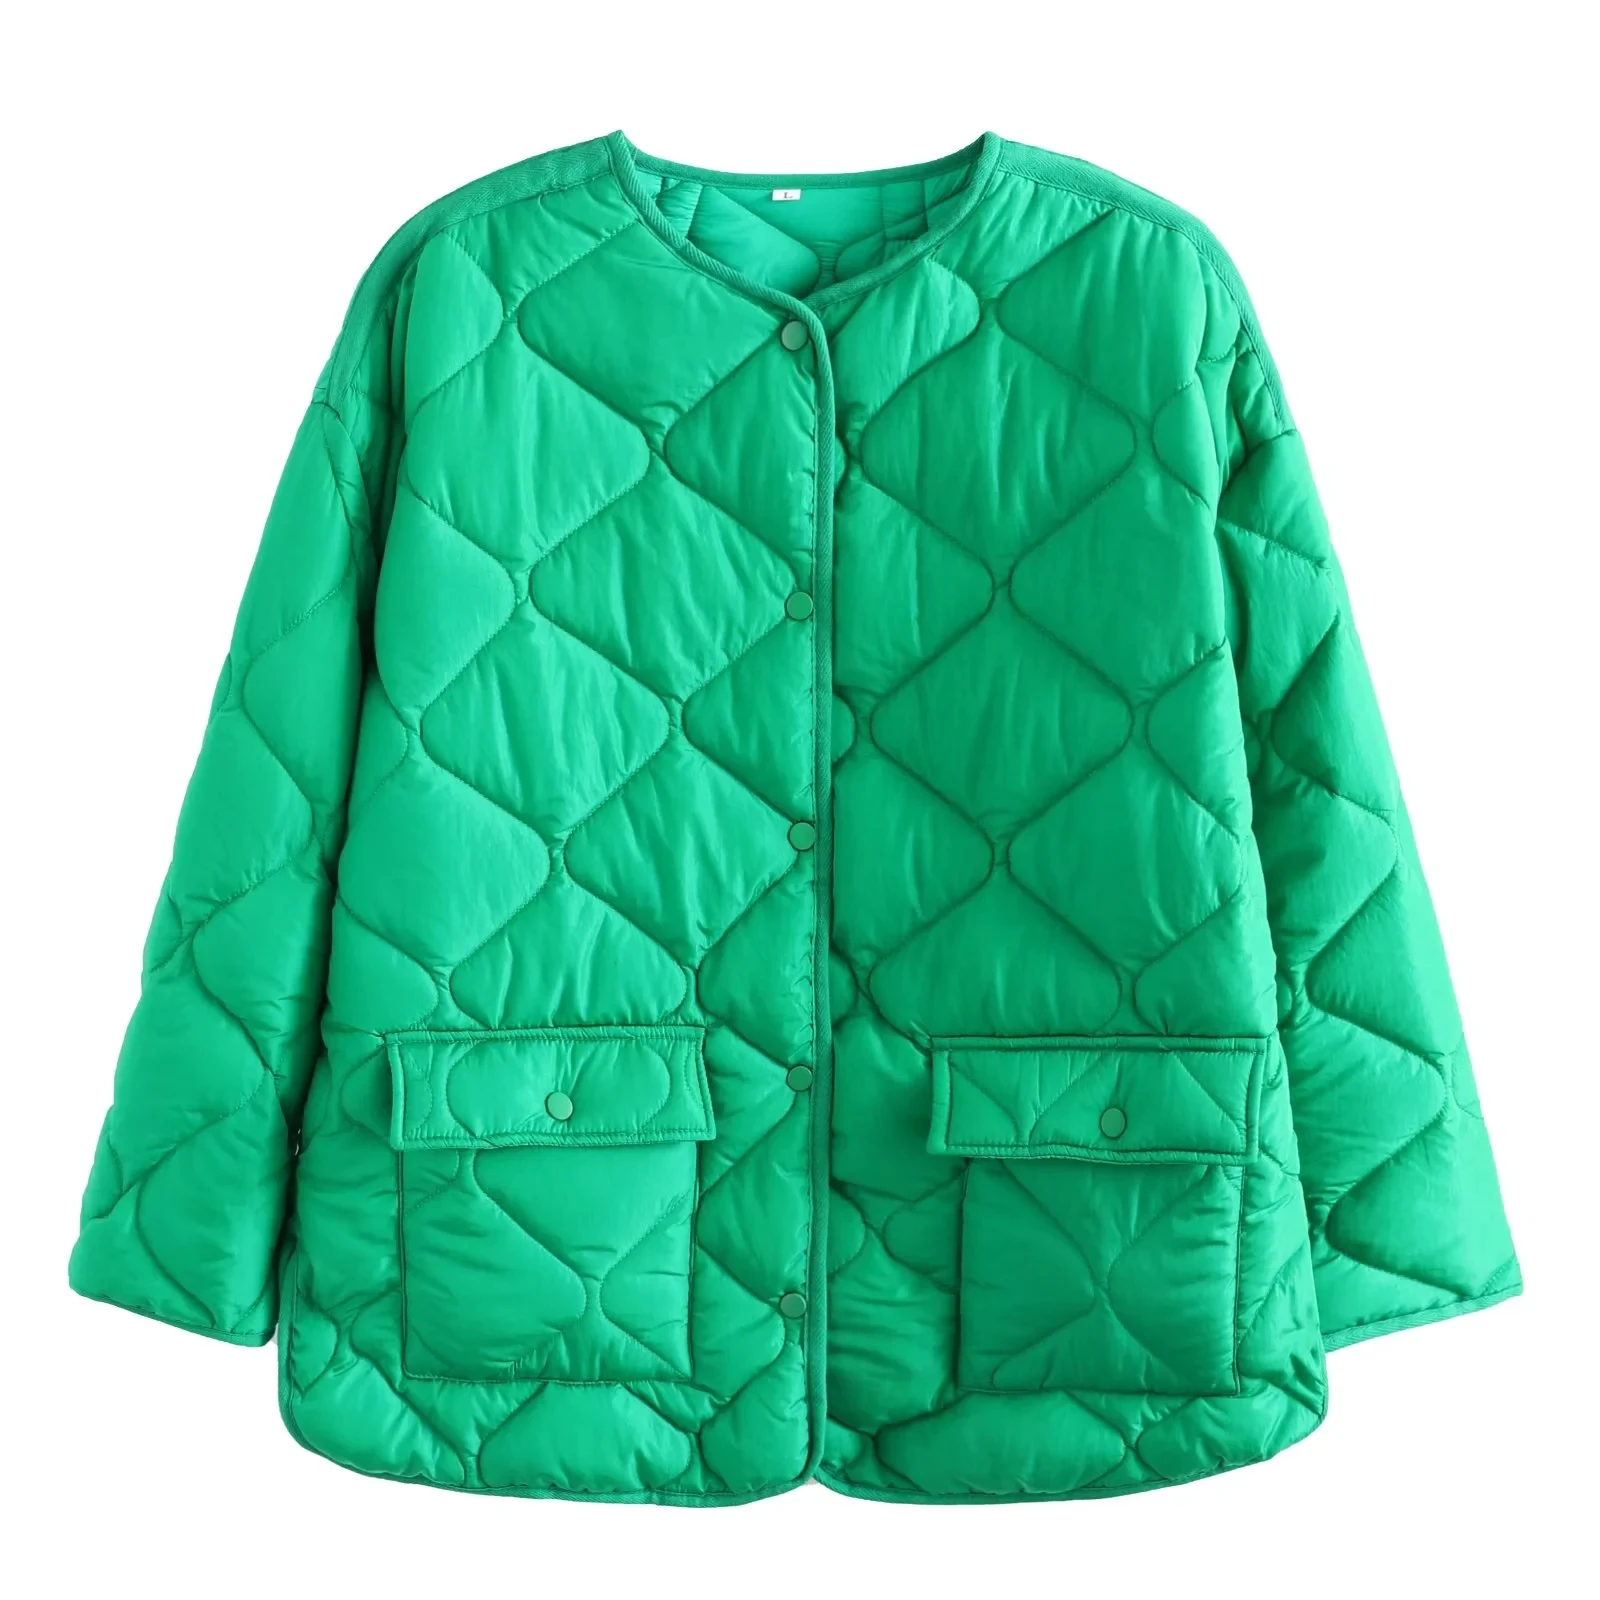 

Women's Parkas Jacket Bomber Coat Green Outwear Casual Loose Outerwear Solid Long Sleeve Elegant Streetwear Vintage Jacket TRF